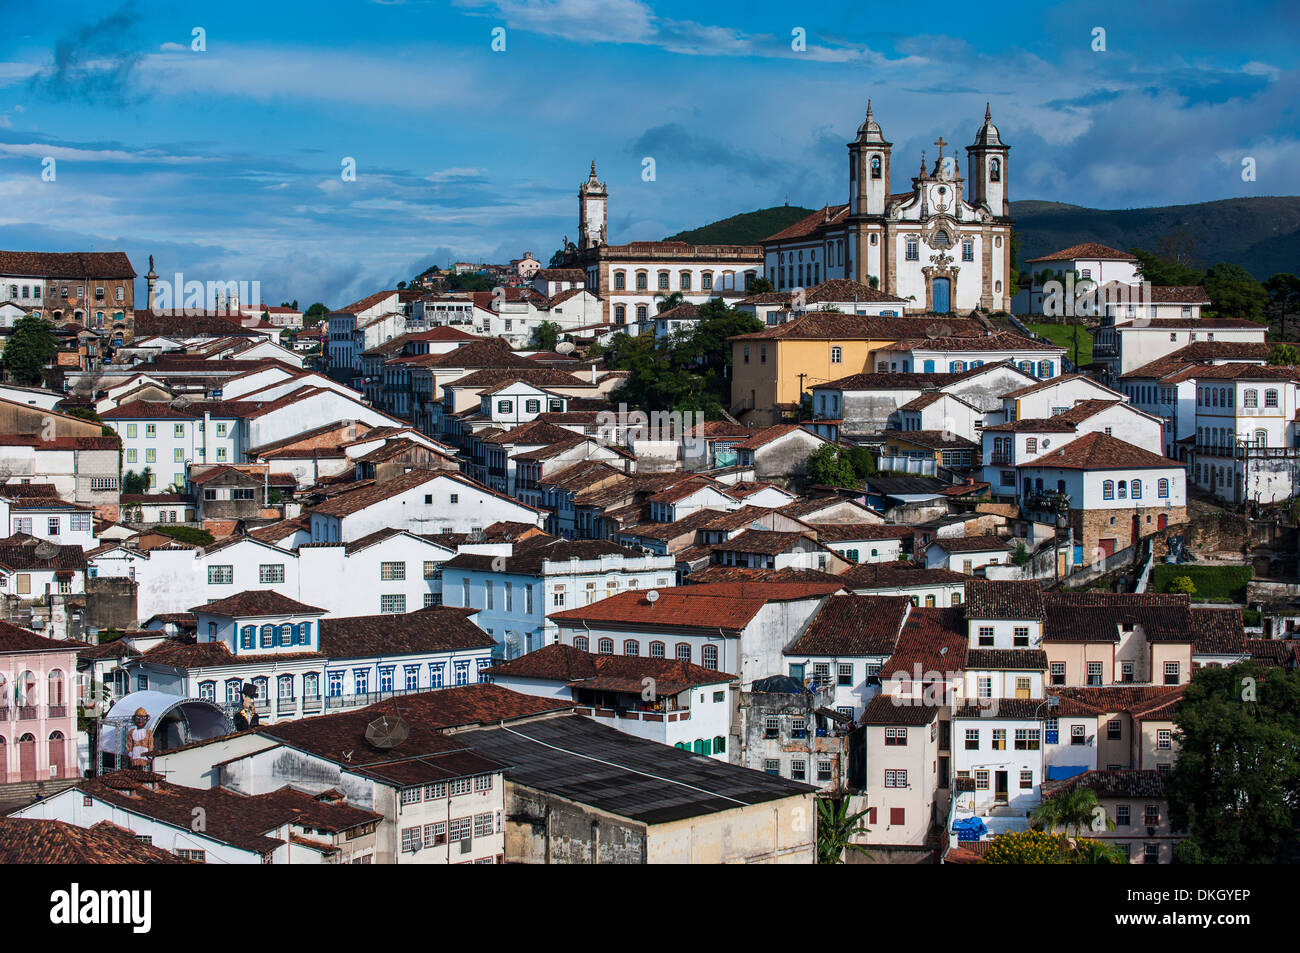 Vue sur la ville coloniale d'Ouro Preto, UNESCO World Heritage Site, Minas Gerais, Brésil, Amérique du Sud Banque D'Images